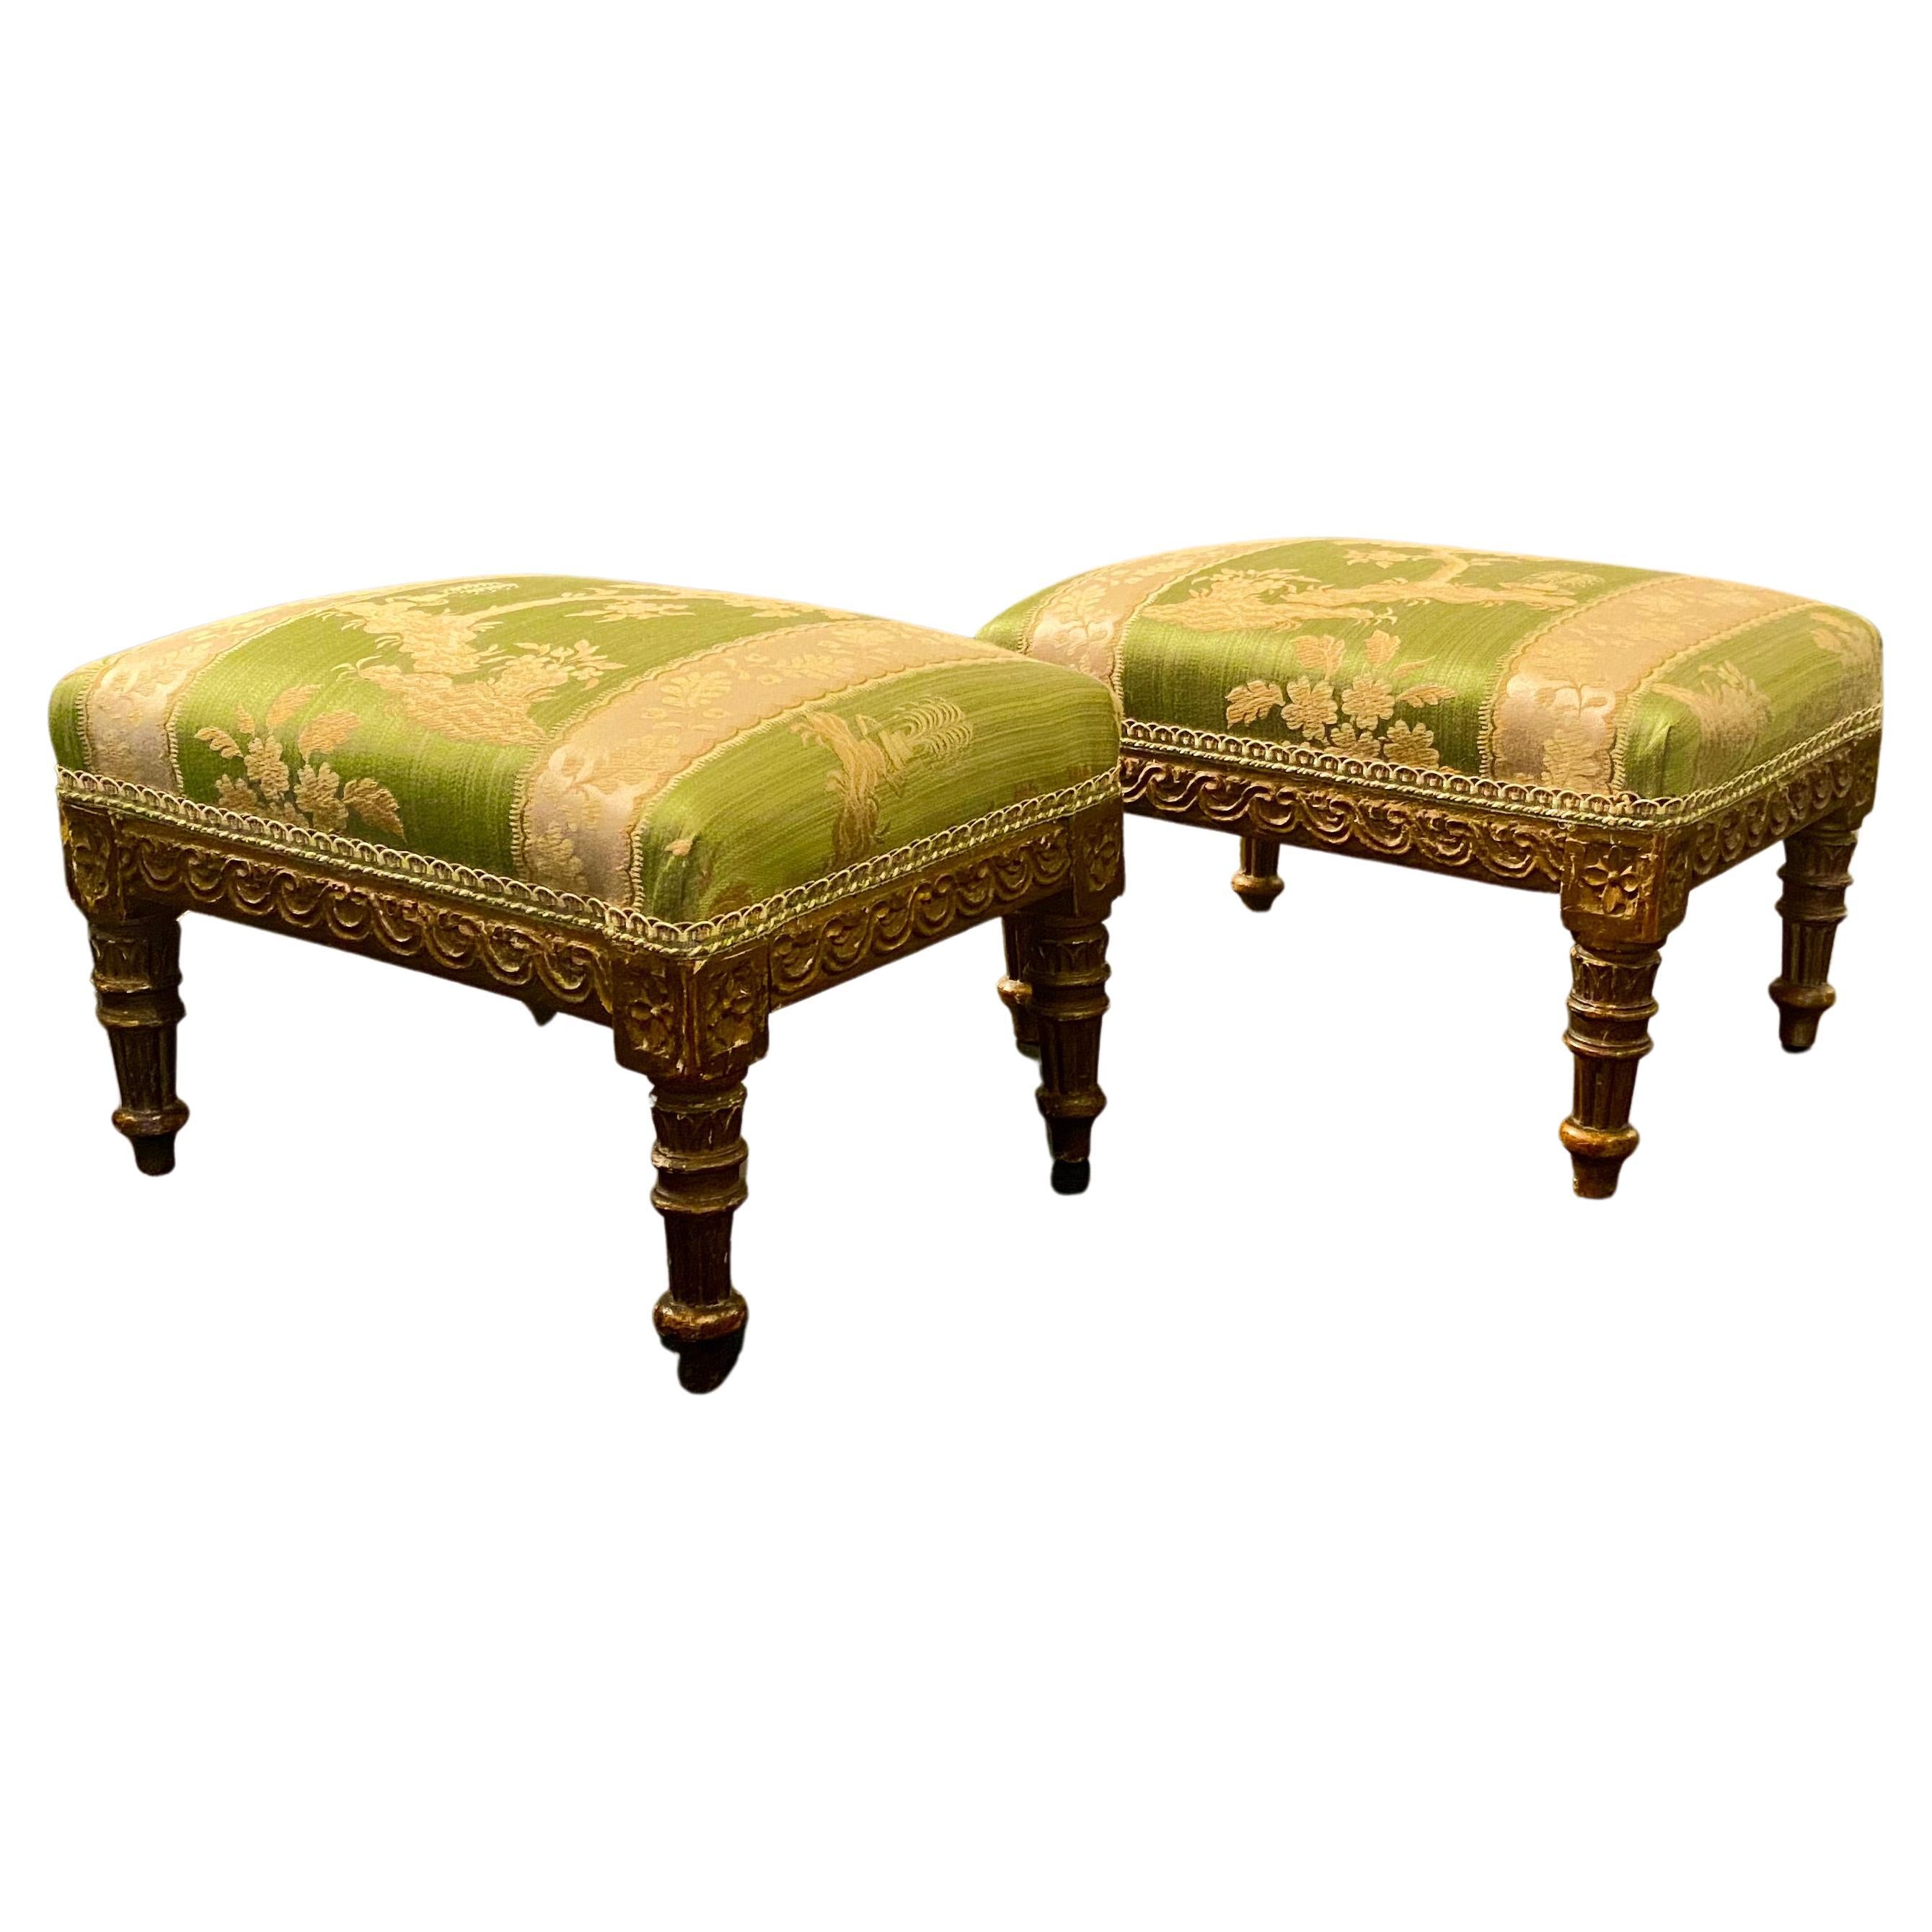 Tabourets sur pied en bois doré de style Louis XVI français, tapisserie en damas de soie vert